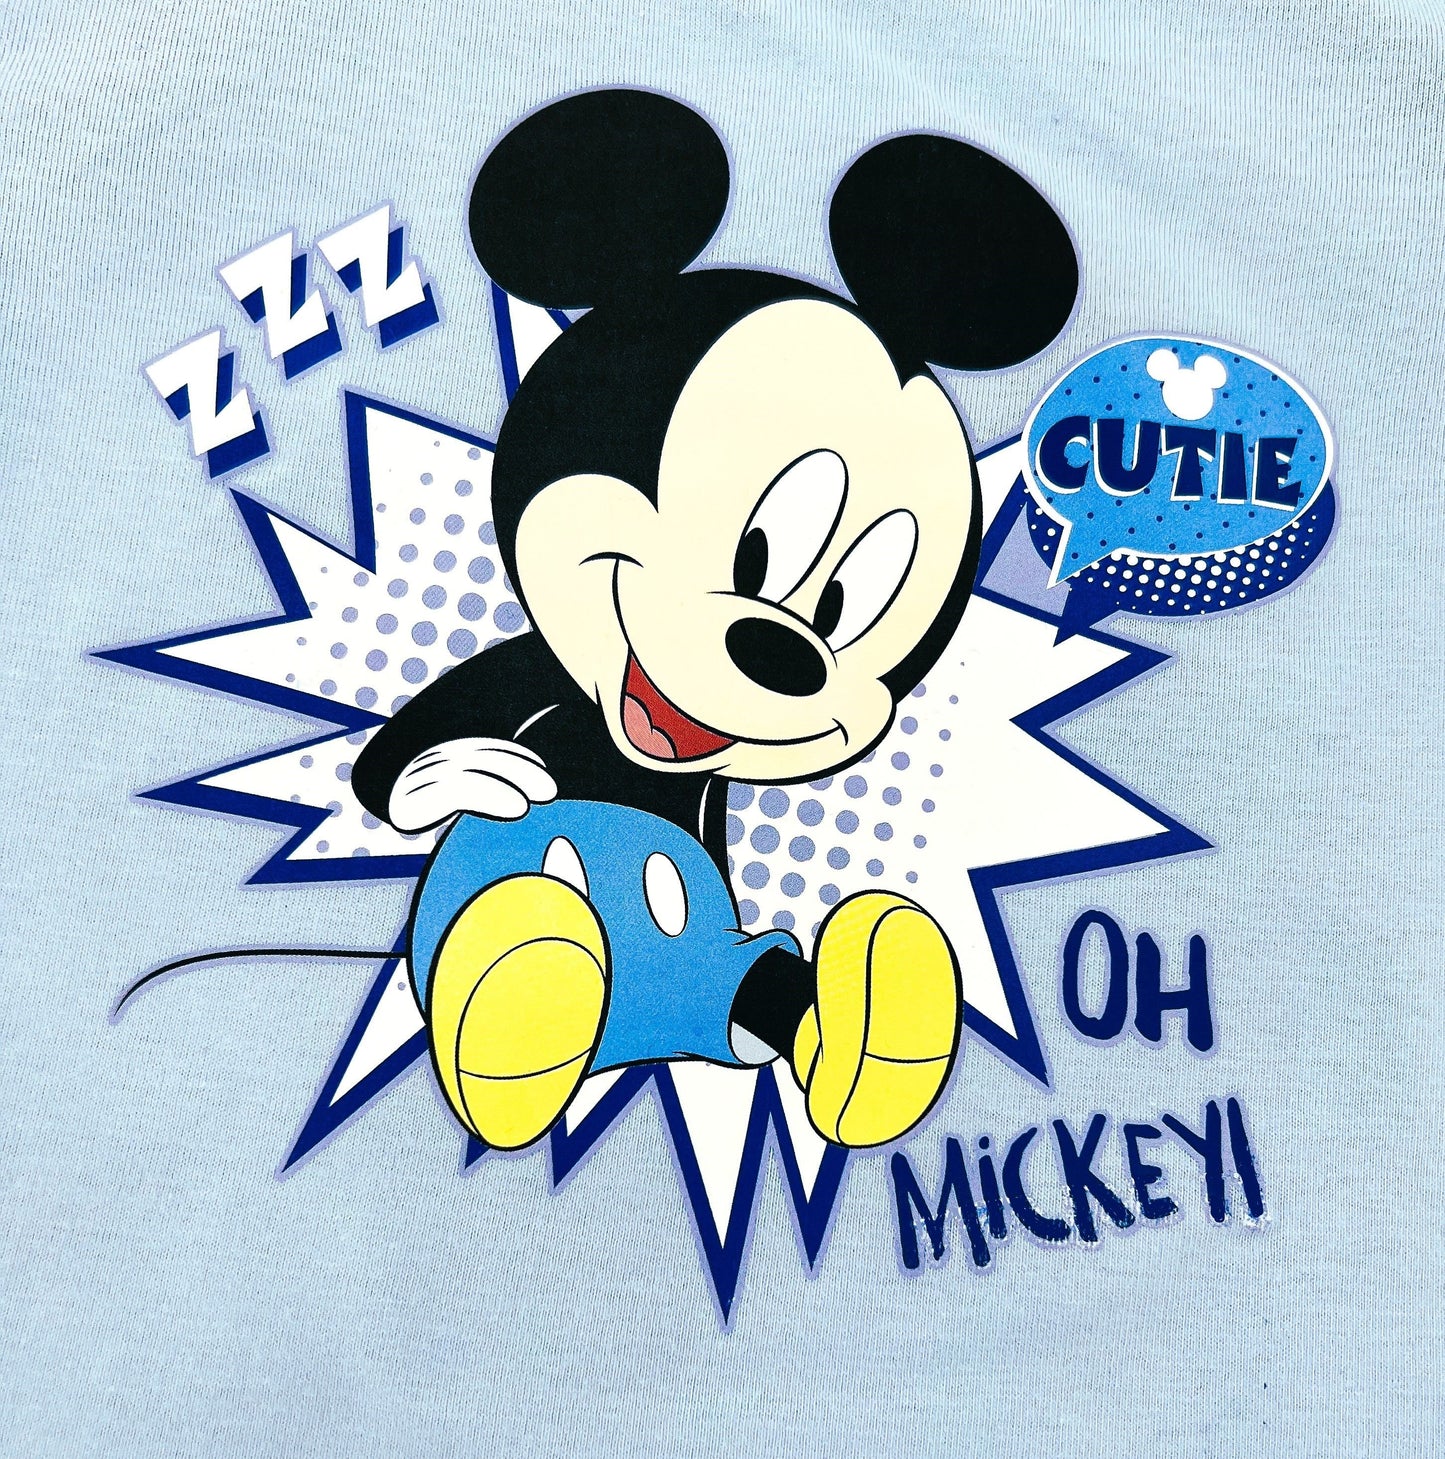 Disney Mickey Mouse Baby Boy 2 Piece Pyjama Set